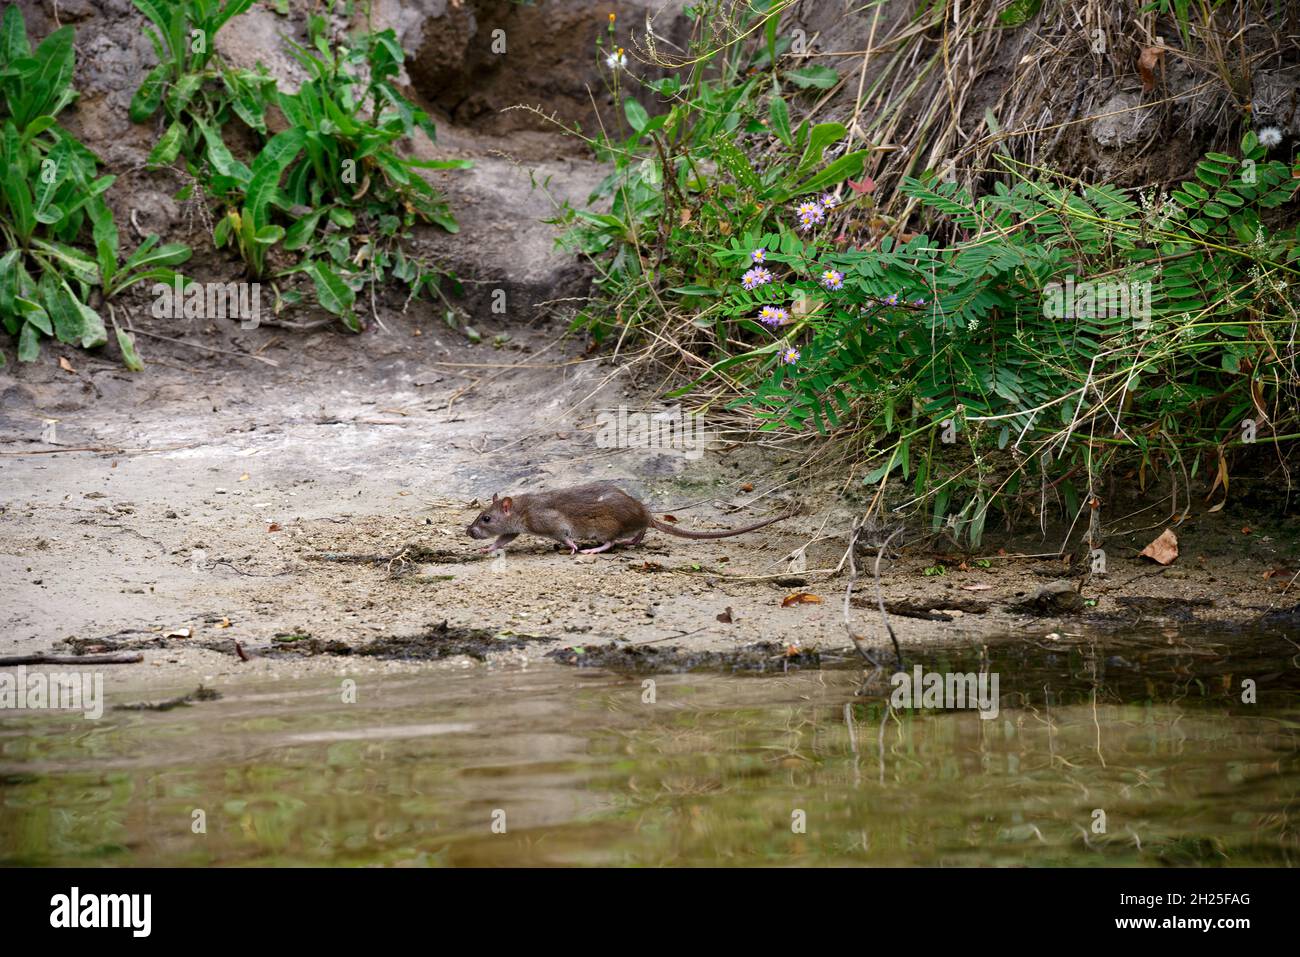 Rat de rivière sur la rive sablonneuse en argile de la rivière Orel près de l'eau, Obukhovka emplacement, Dnepropetrovsk région, Ukraine. Banque D'Images